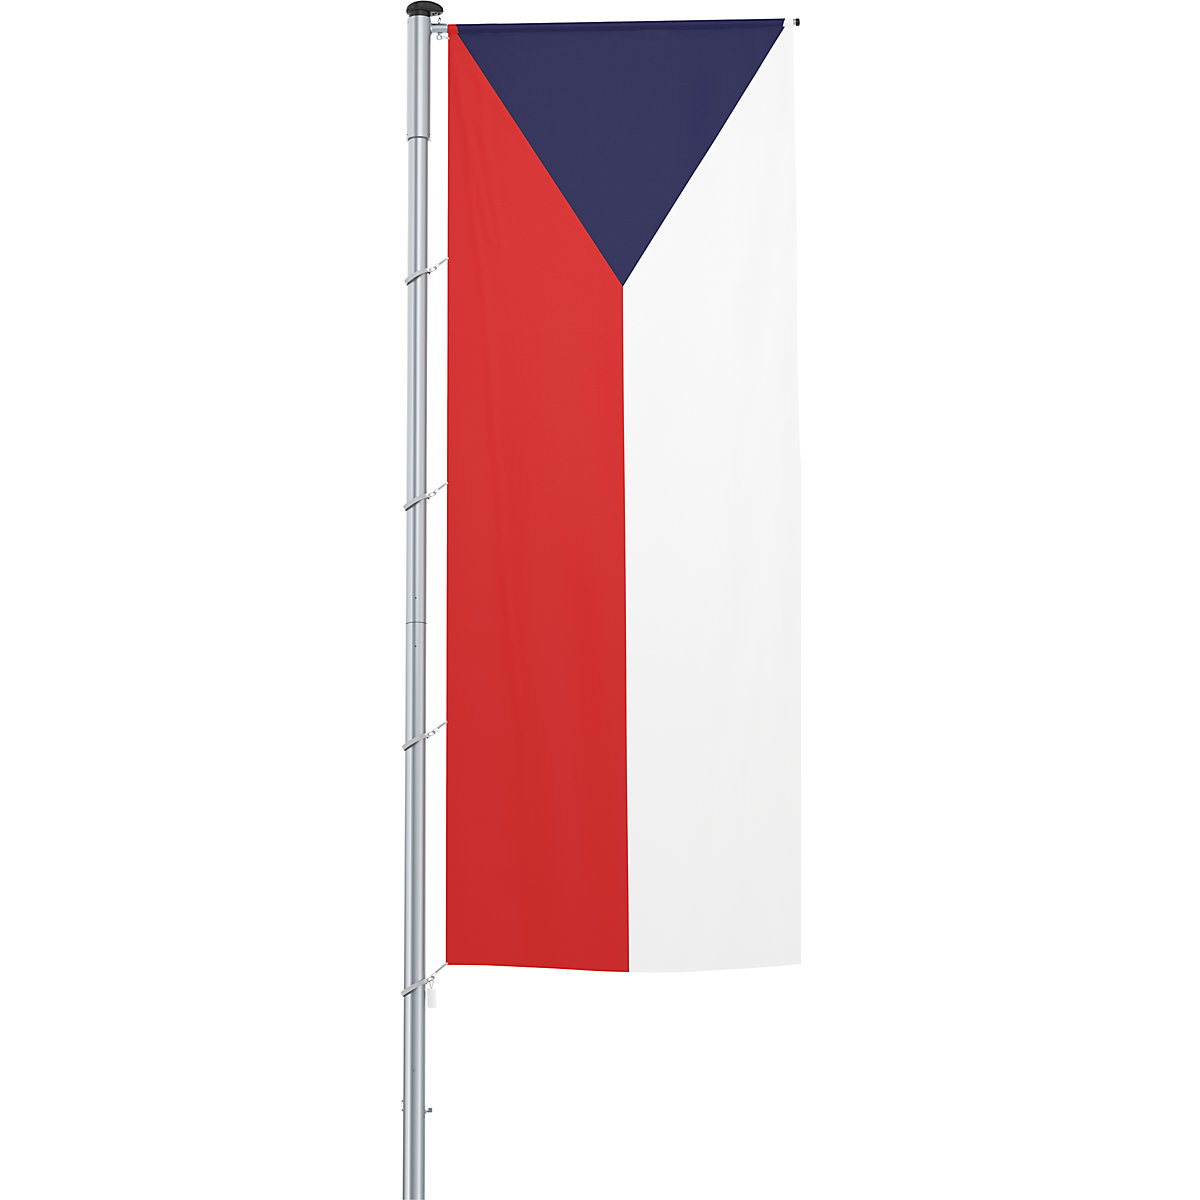 Mannus – Bandera con pluma/bandera del país, formato 1,2 x 3 m, República Checa